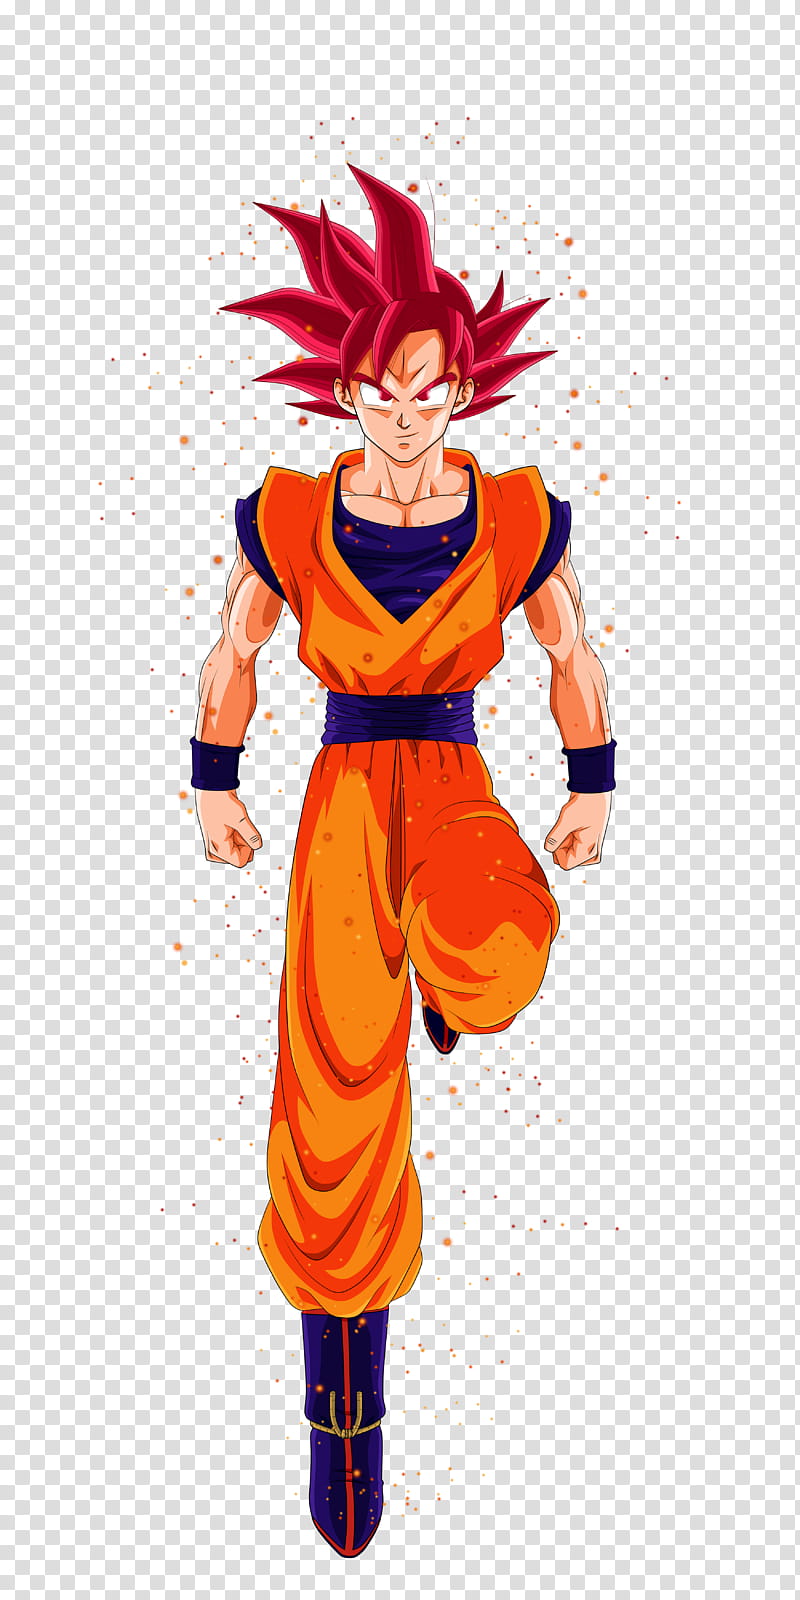 Goku Super Saiyajin Dios transparent background PNG clipart